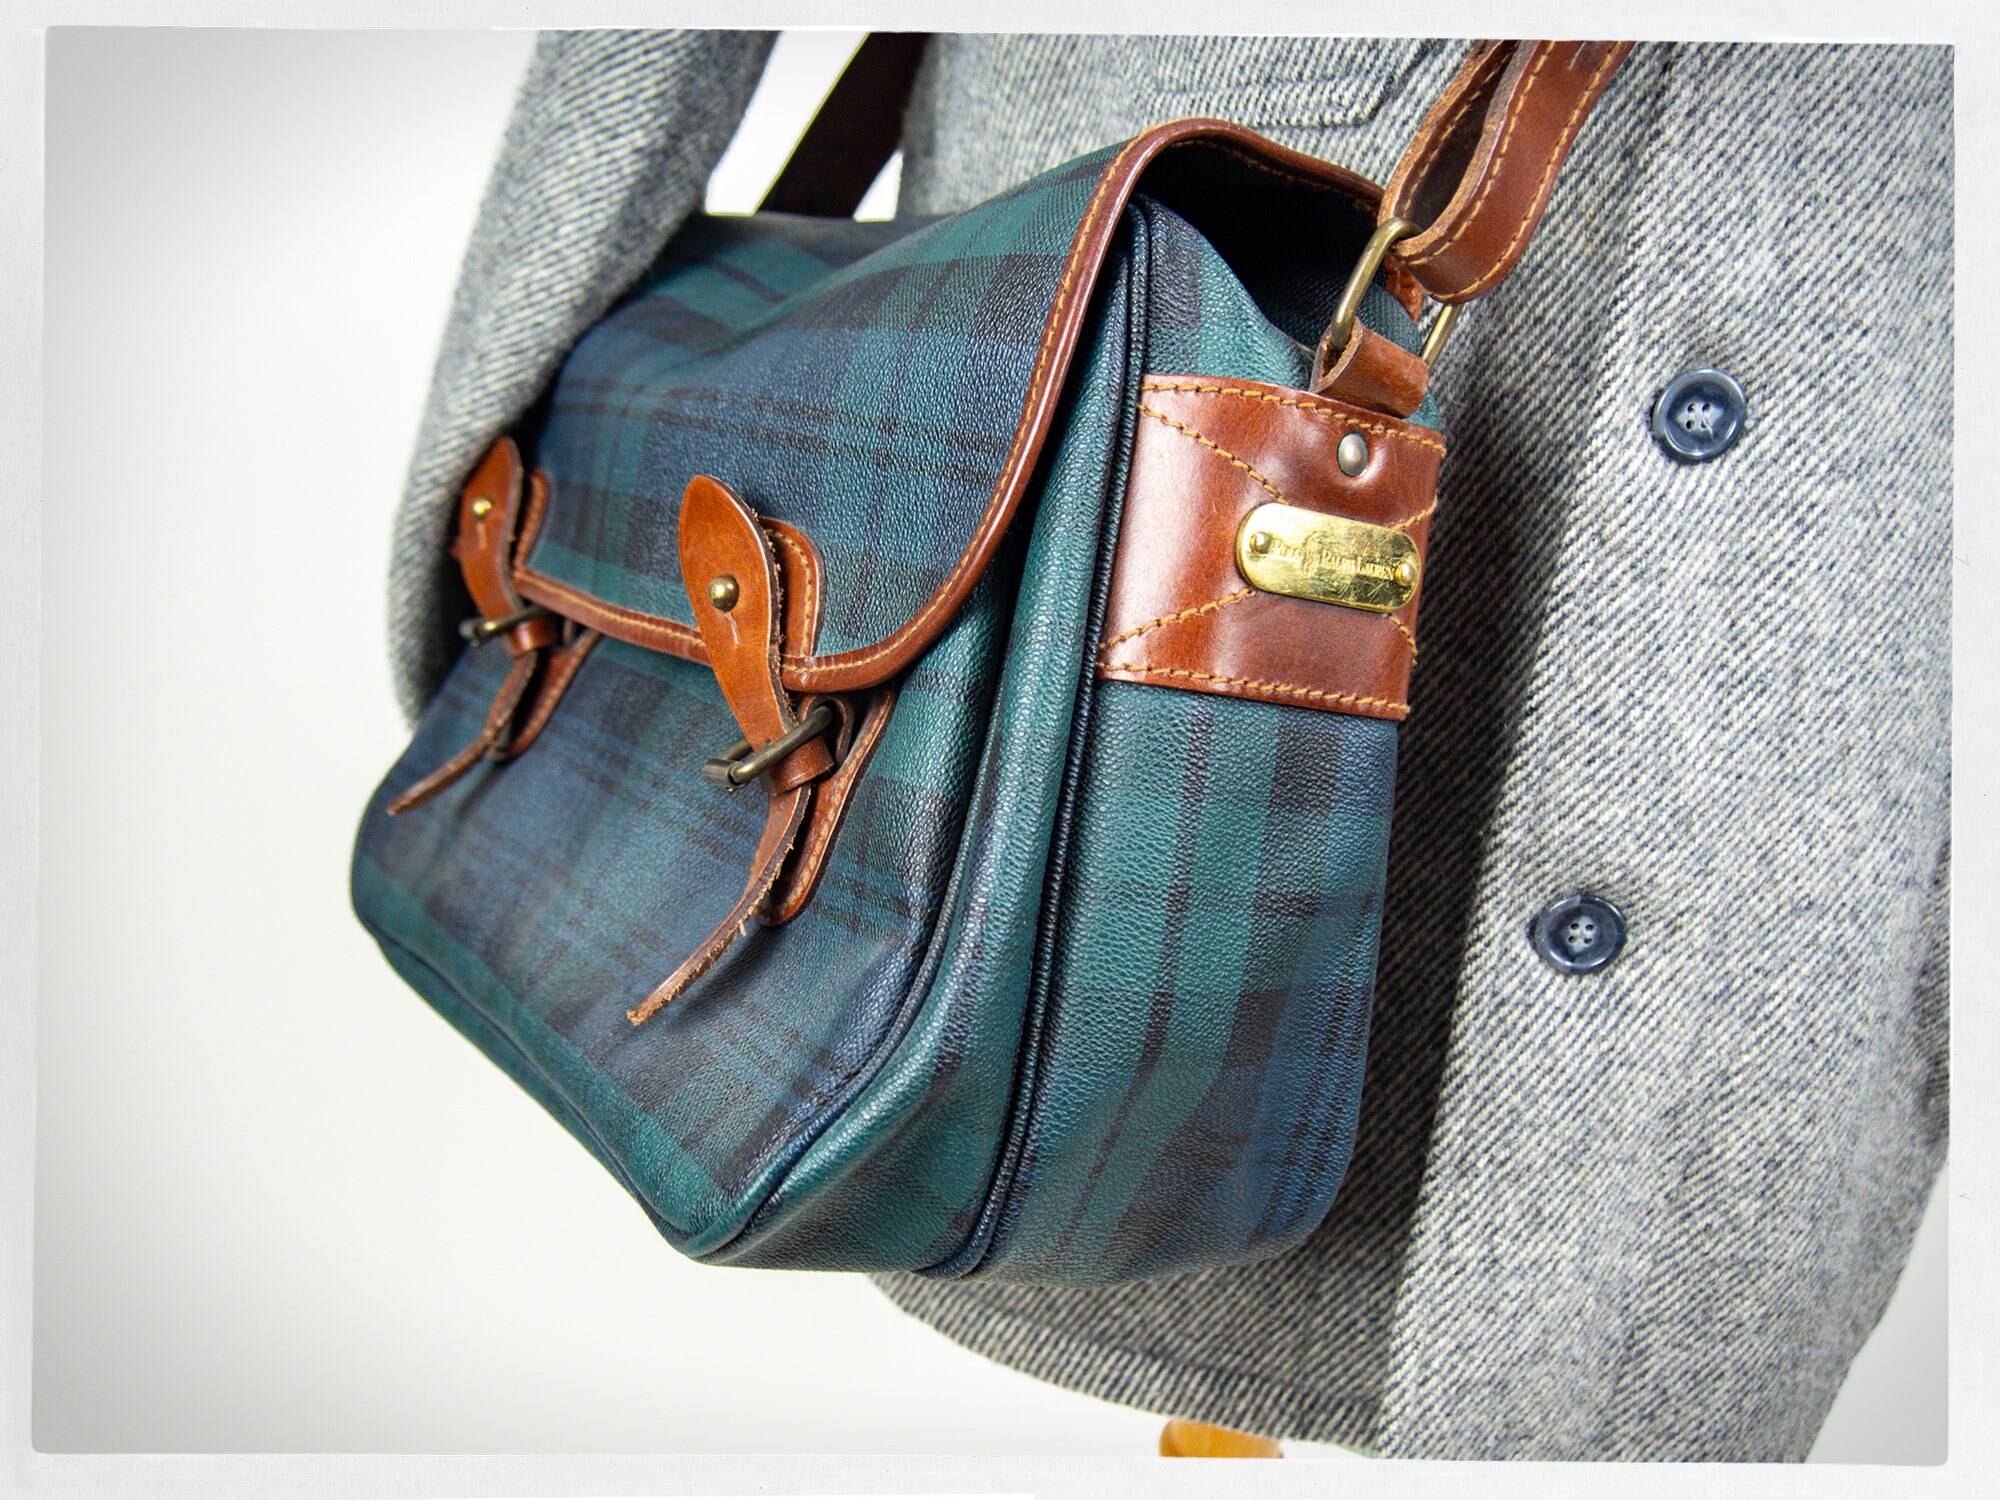 Vintage Ralph Lauren Blackwater bag “wrinkles” : r/handbags